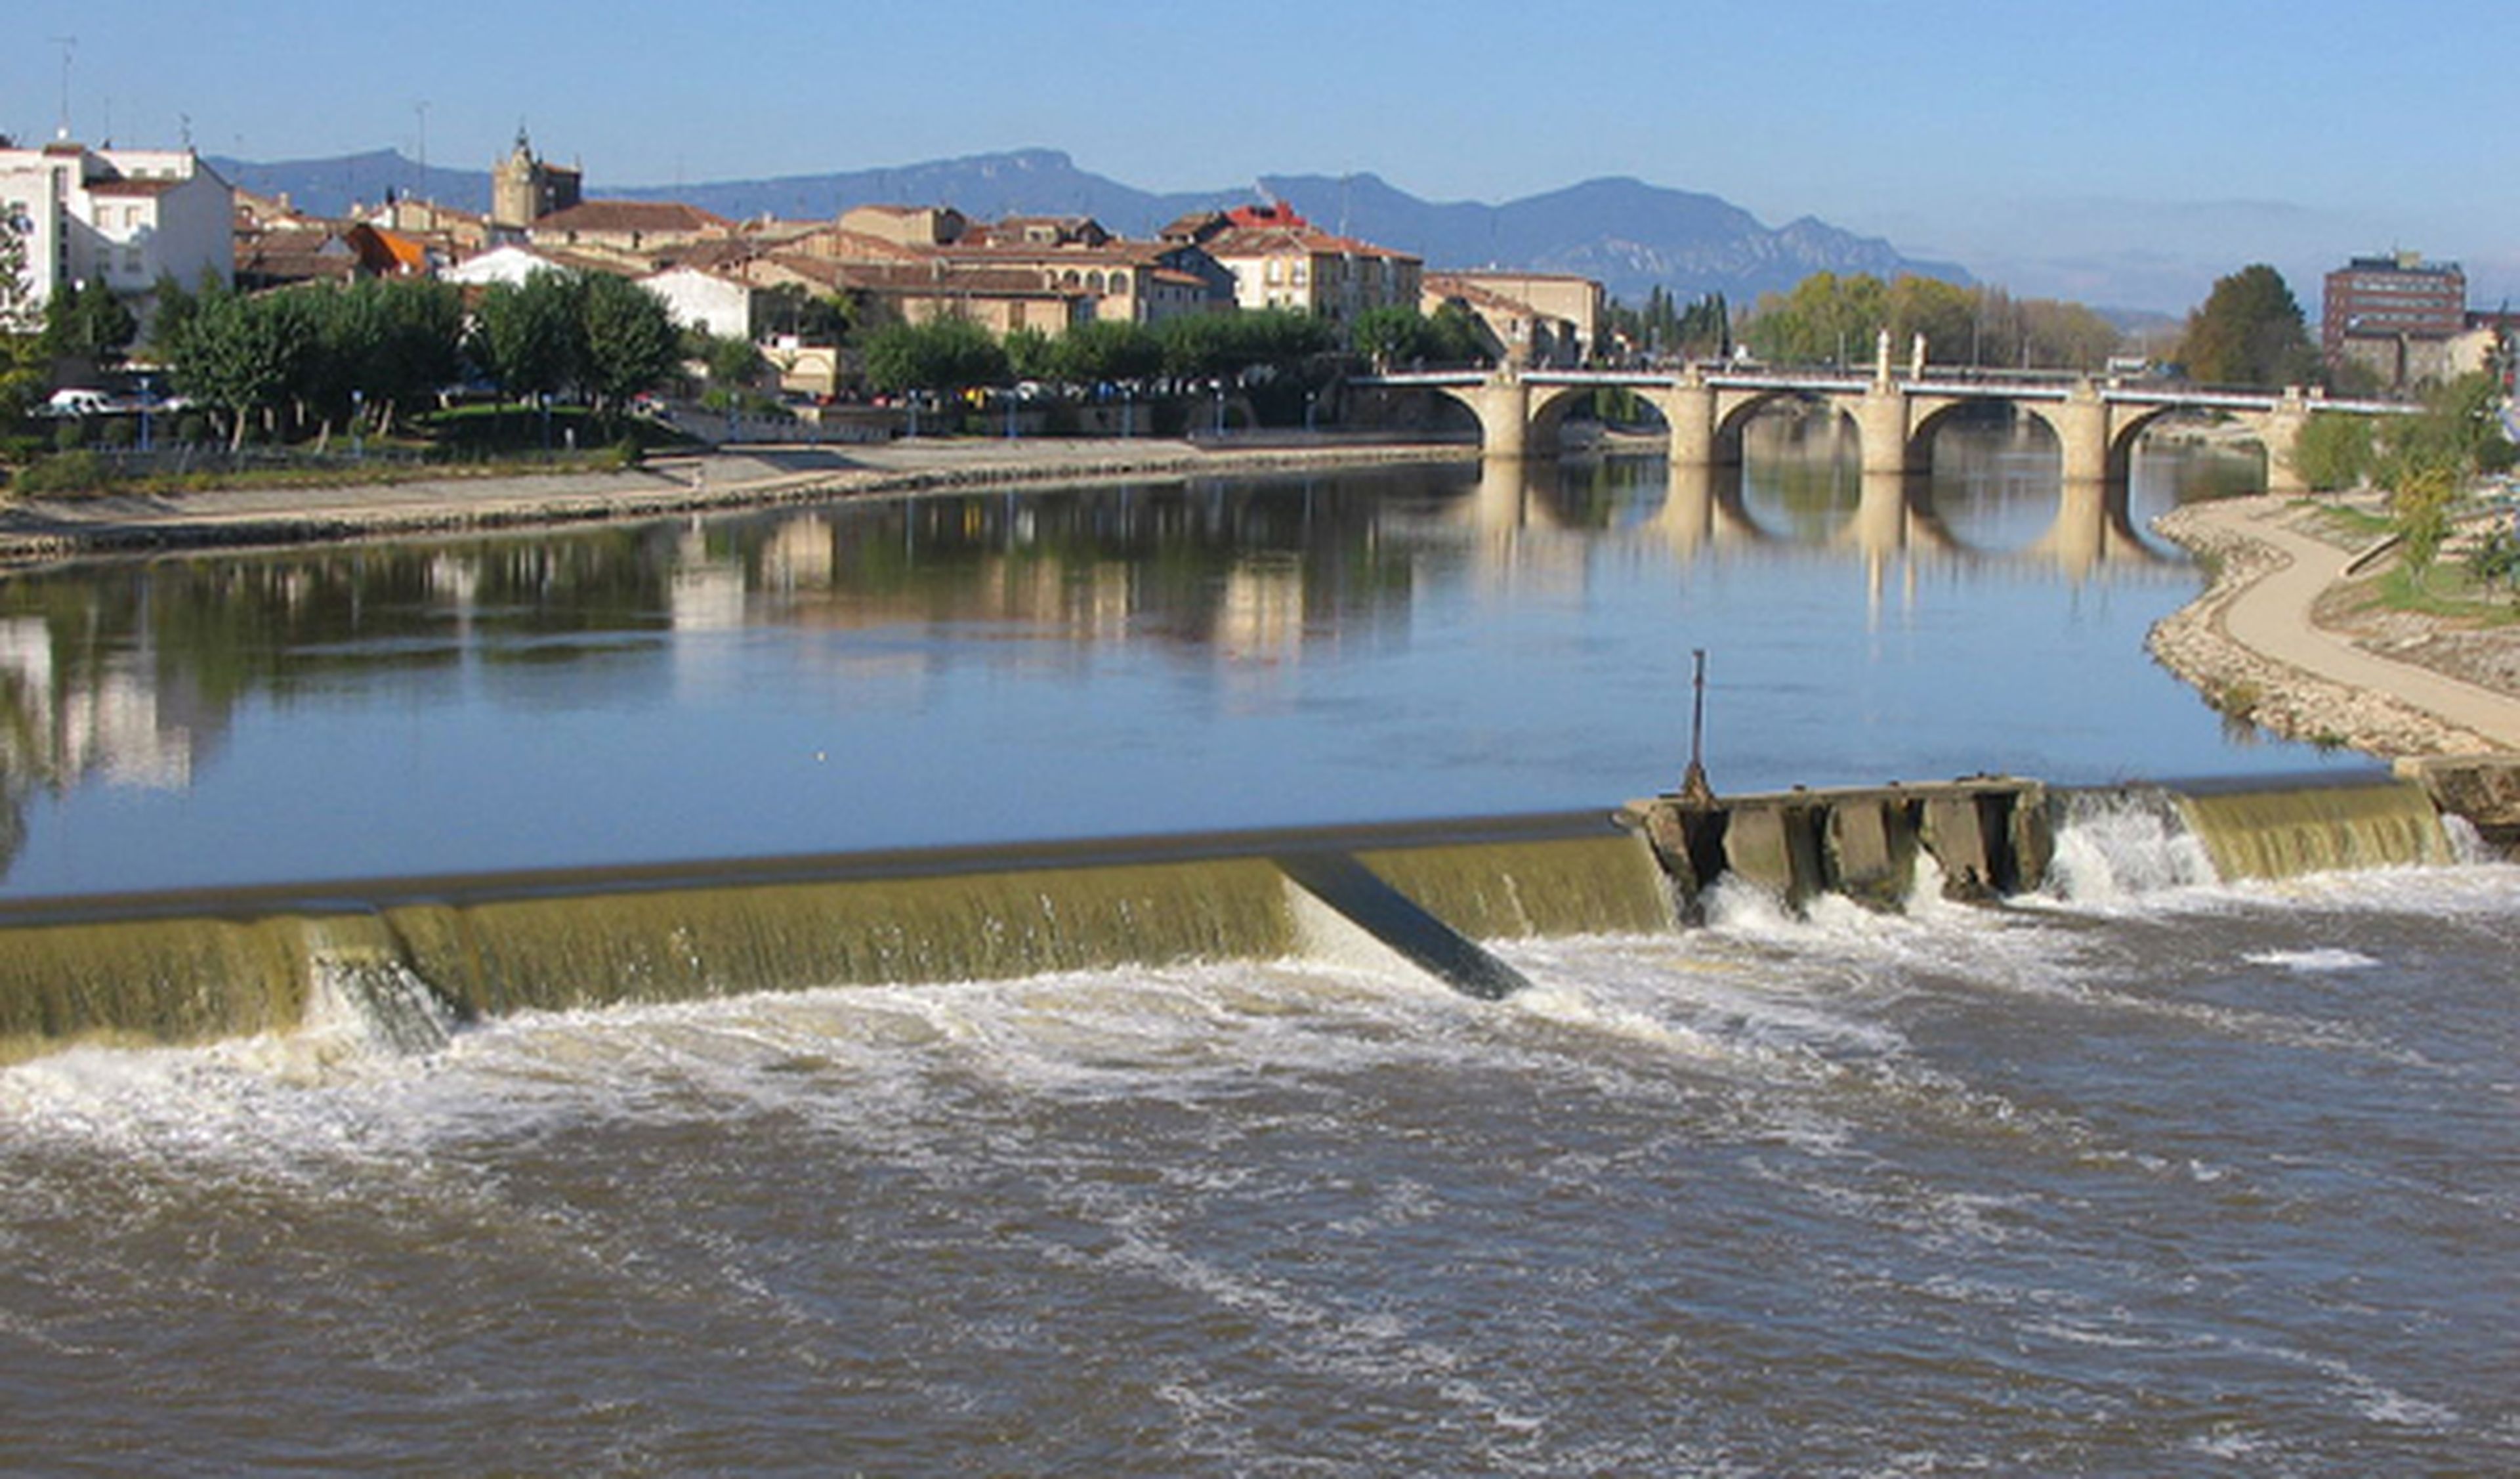 Cae al río mientras escapa con un coche robado en Zaragoza